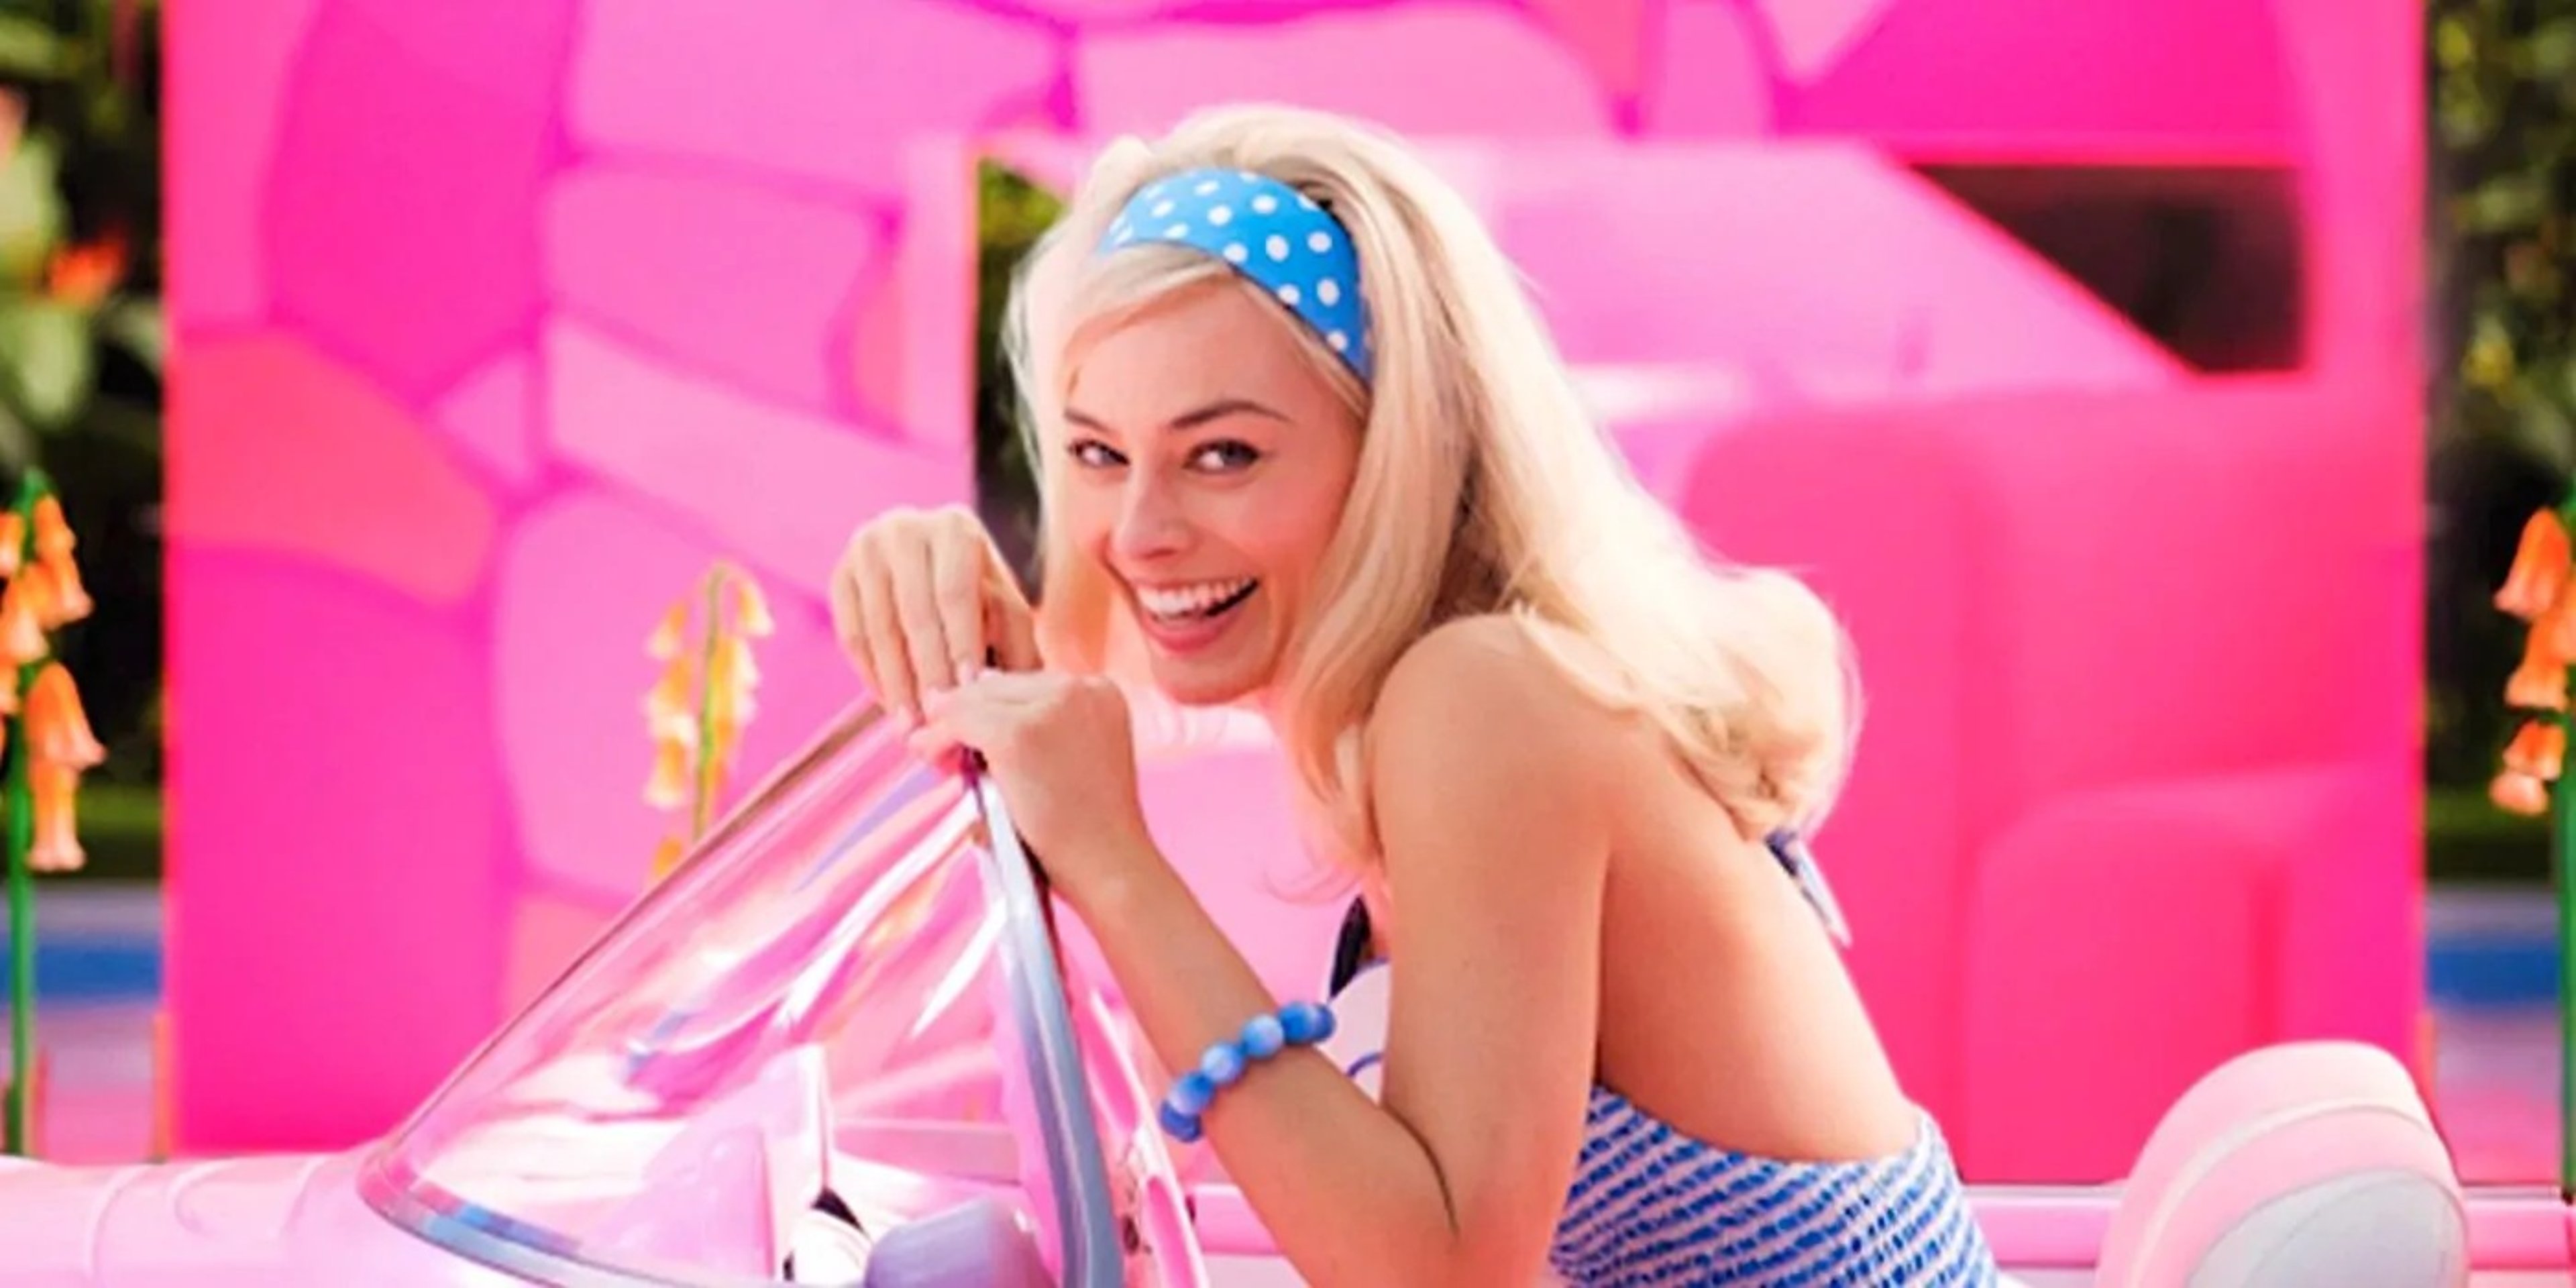 Fantastici 4: anche Margot Robbie in lizza?